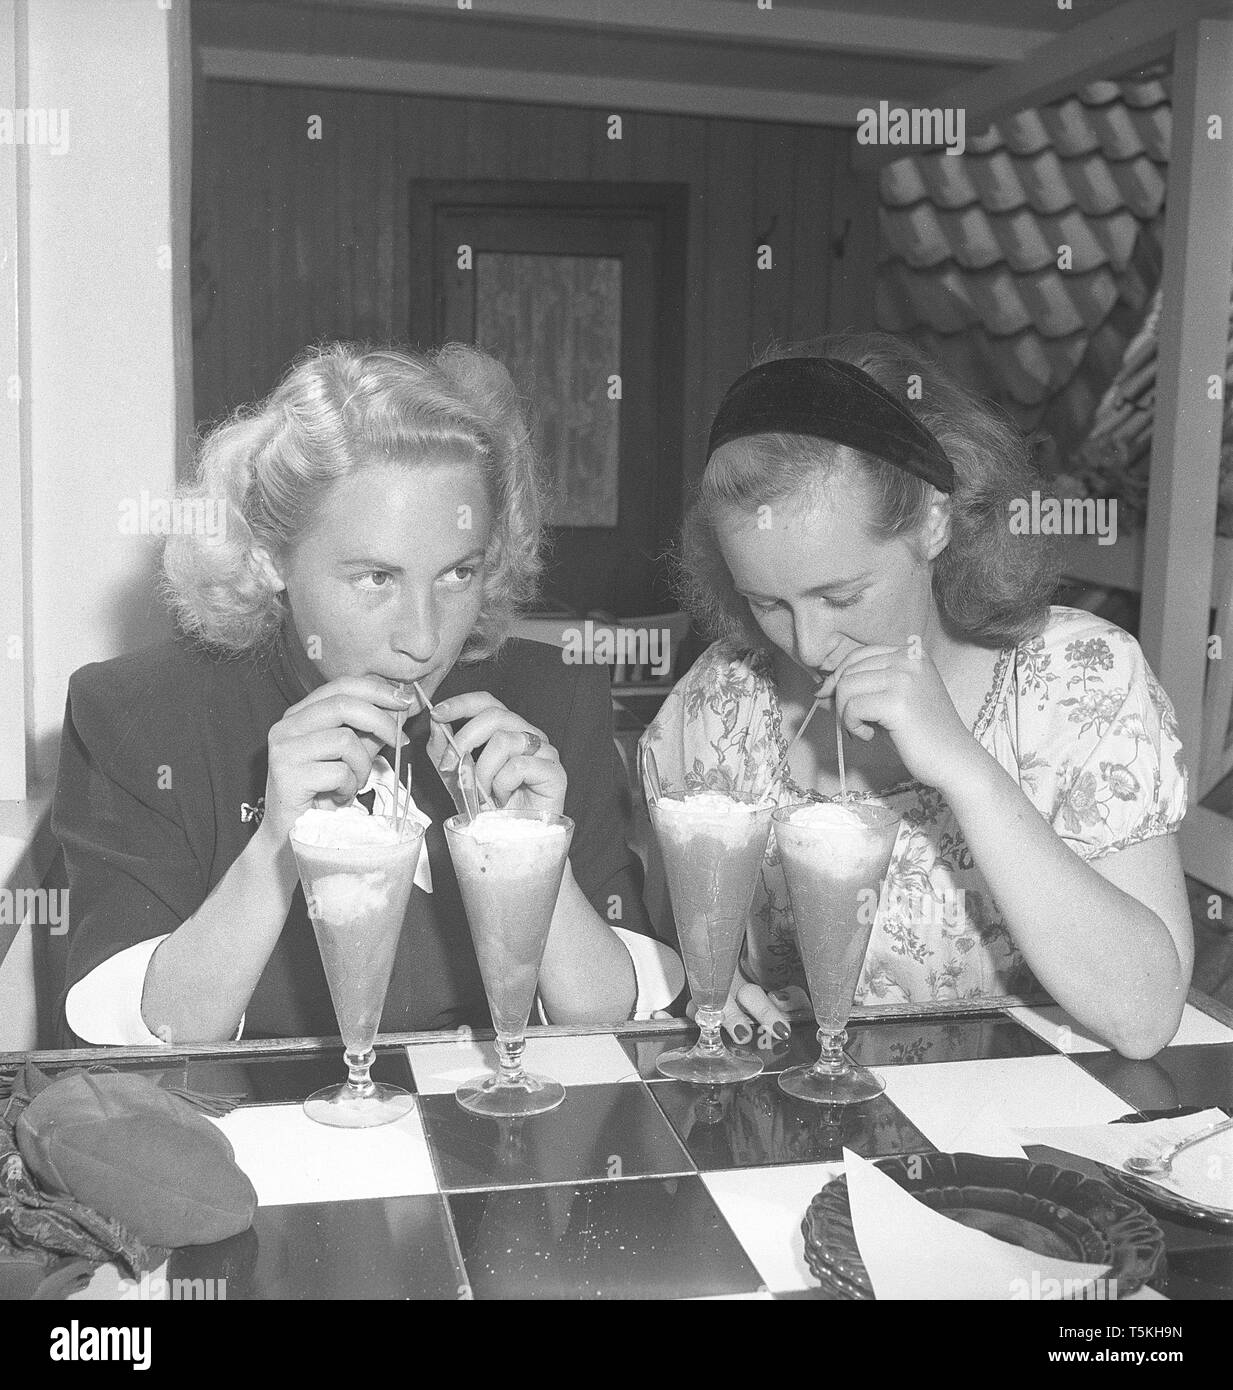 1940 actrice. Un verre de la boisson dessert n'est pas suffisant. Ces deux jeunes femmes ont deux verres chacun et des boissons d'eux avec une paille. Kristoffersson Photo ref U115-1. Suède 1946 Banque D'Images